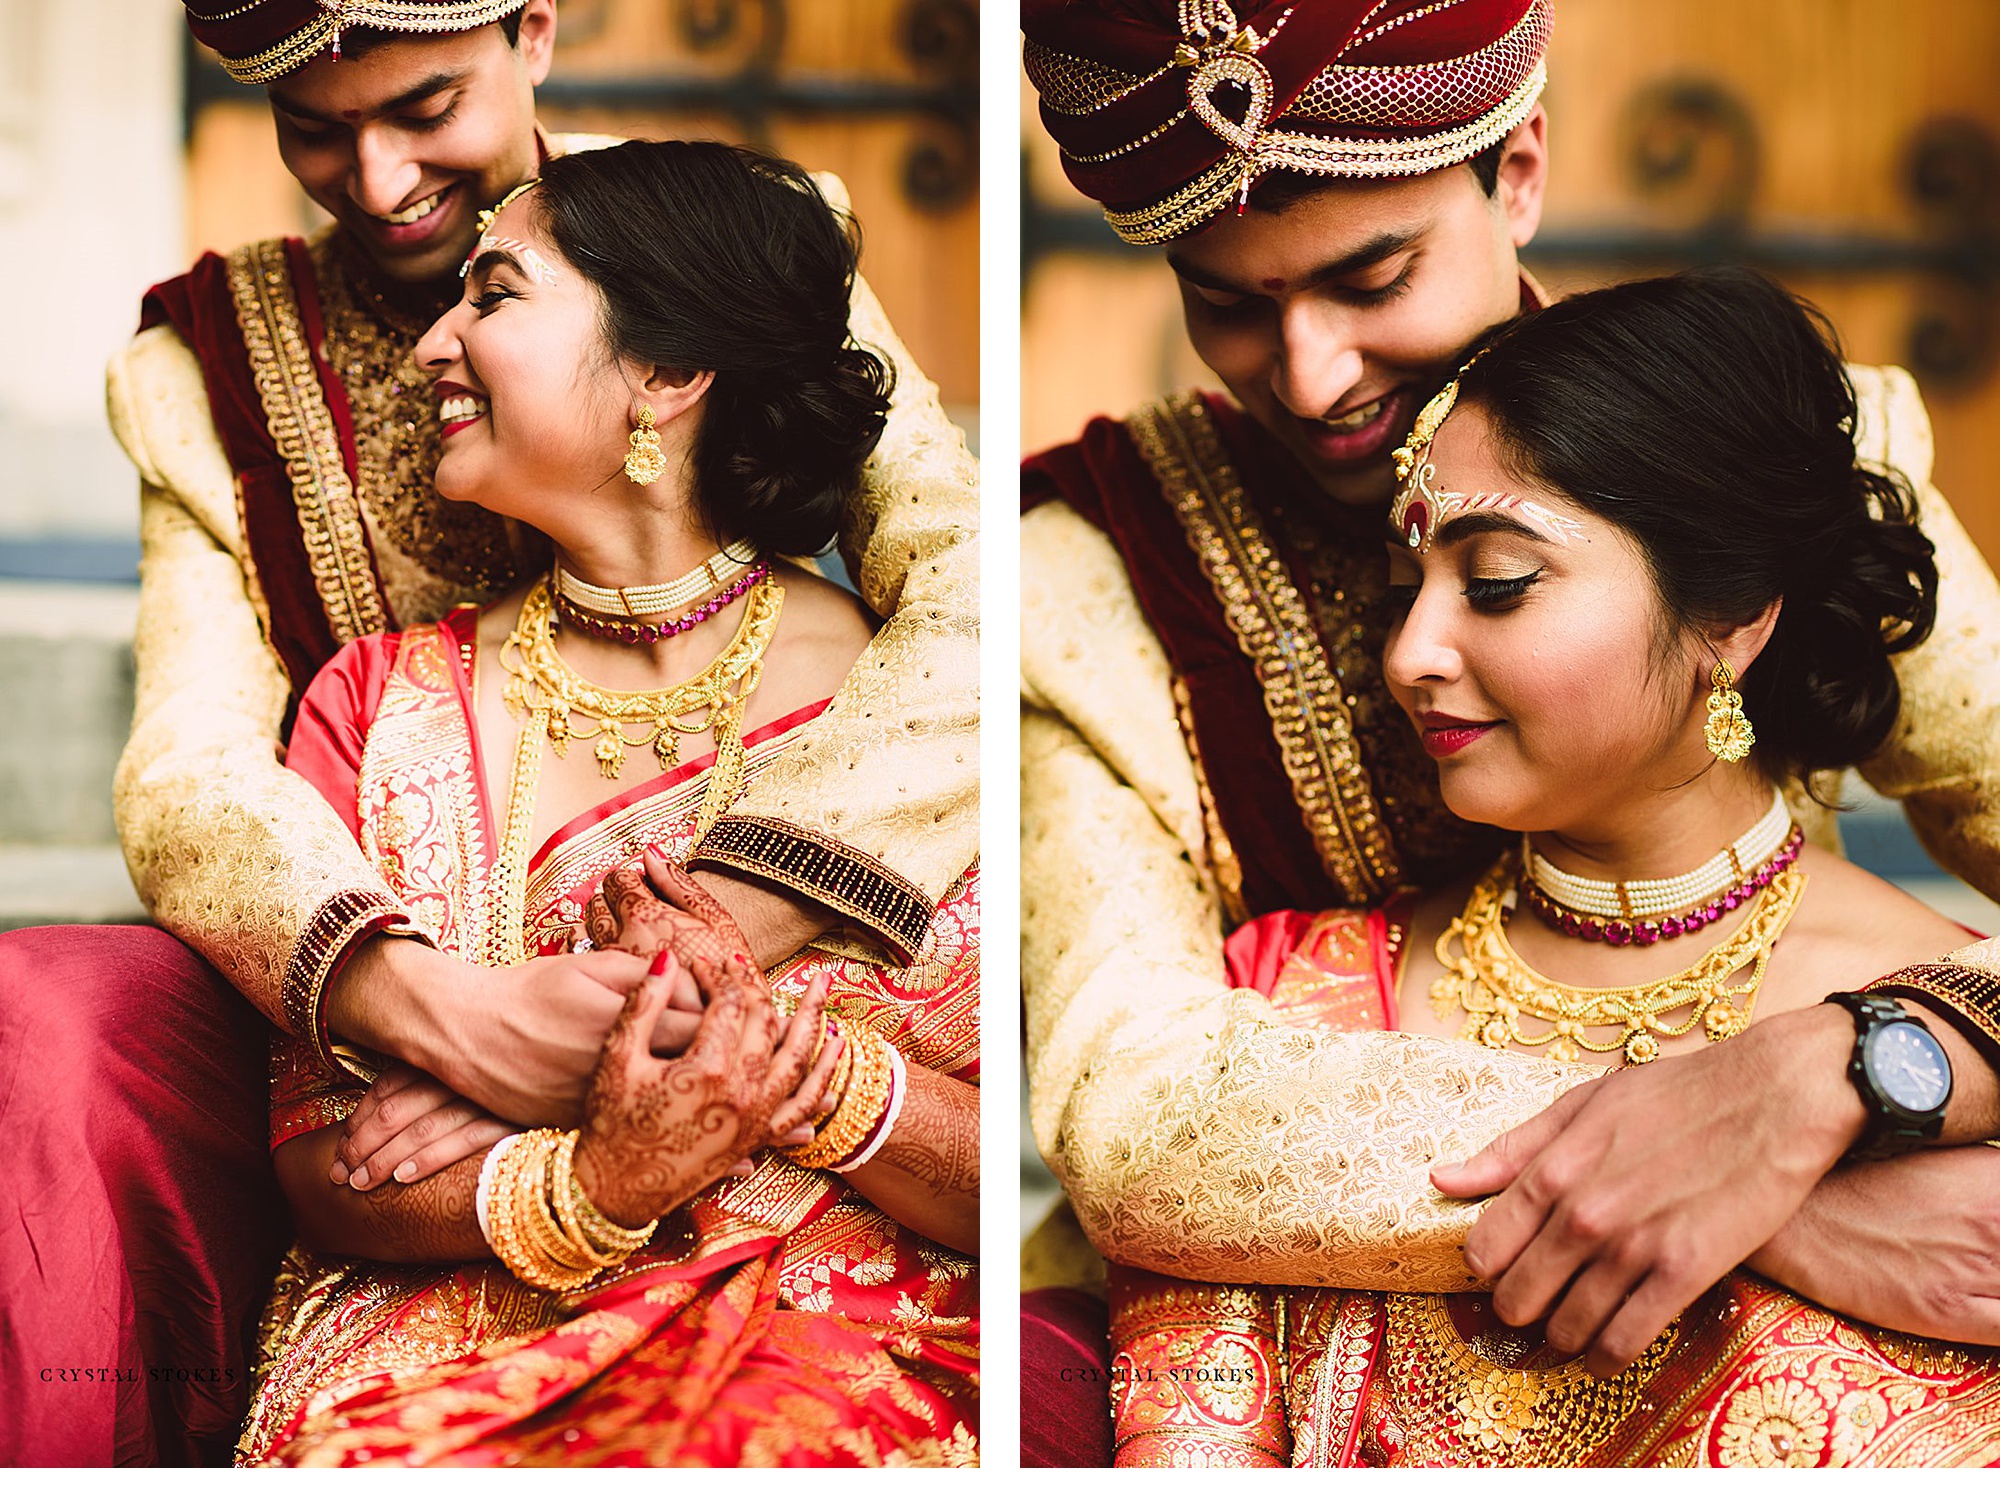 60 Marathi wedding similar pic ideas | indian wedding photography, indian wedding  photography couples, wedding couple poses photography